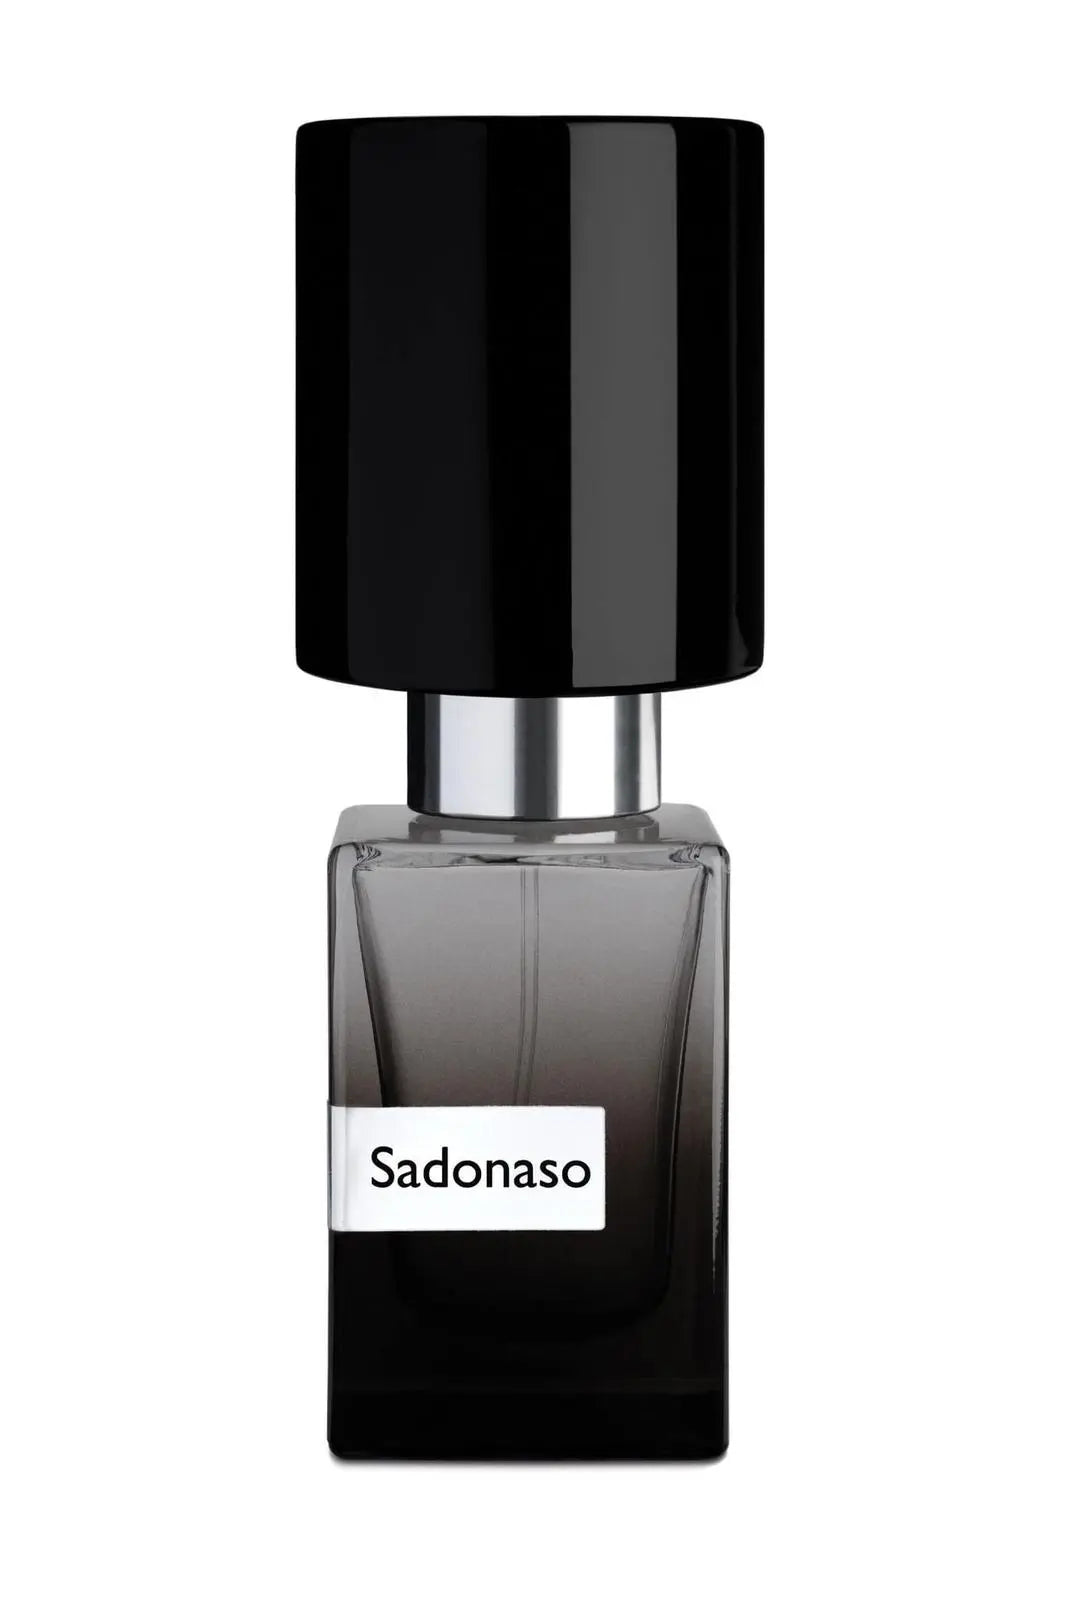 Extrait de parfum SADONASO Nasomatto - 30 ml ÉDITION LIMITÉE (Capuchon)